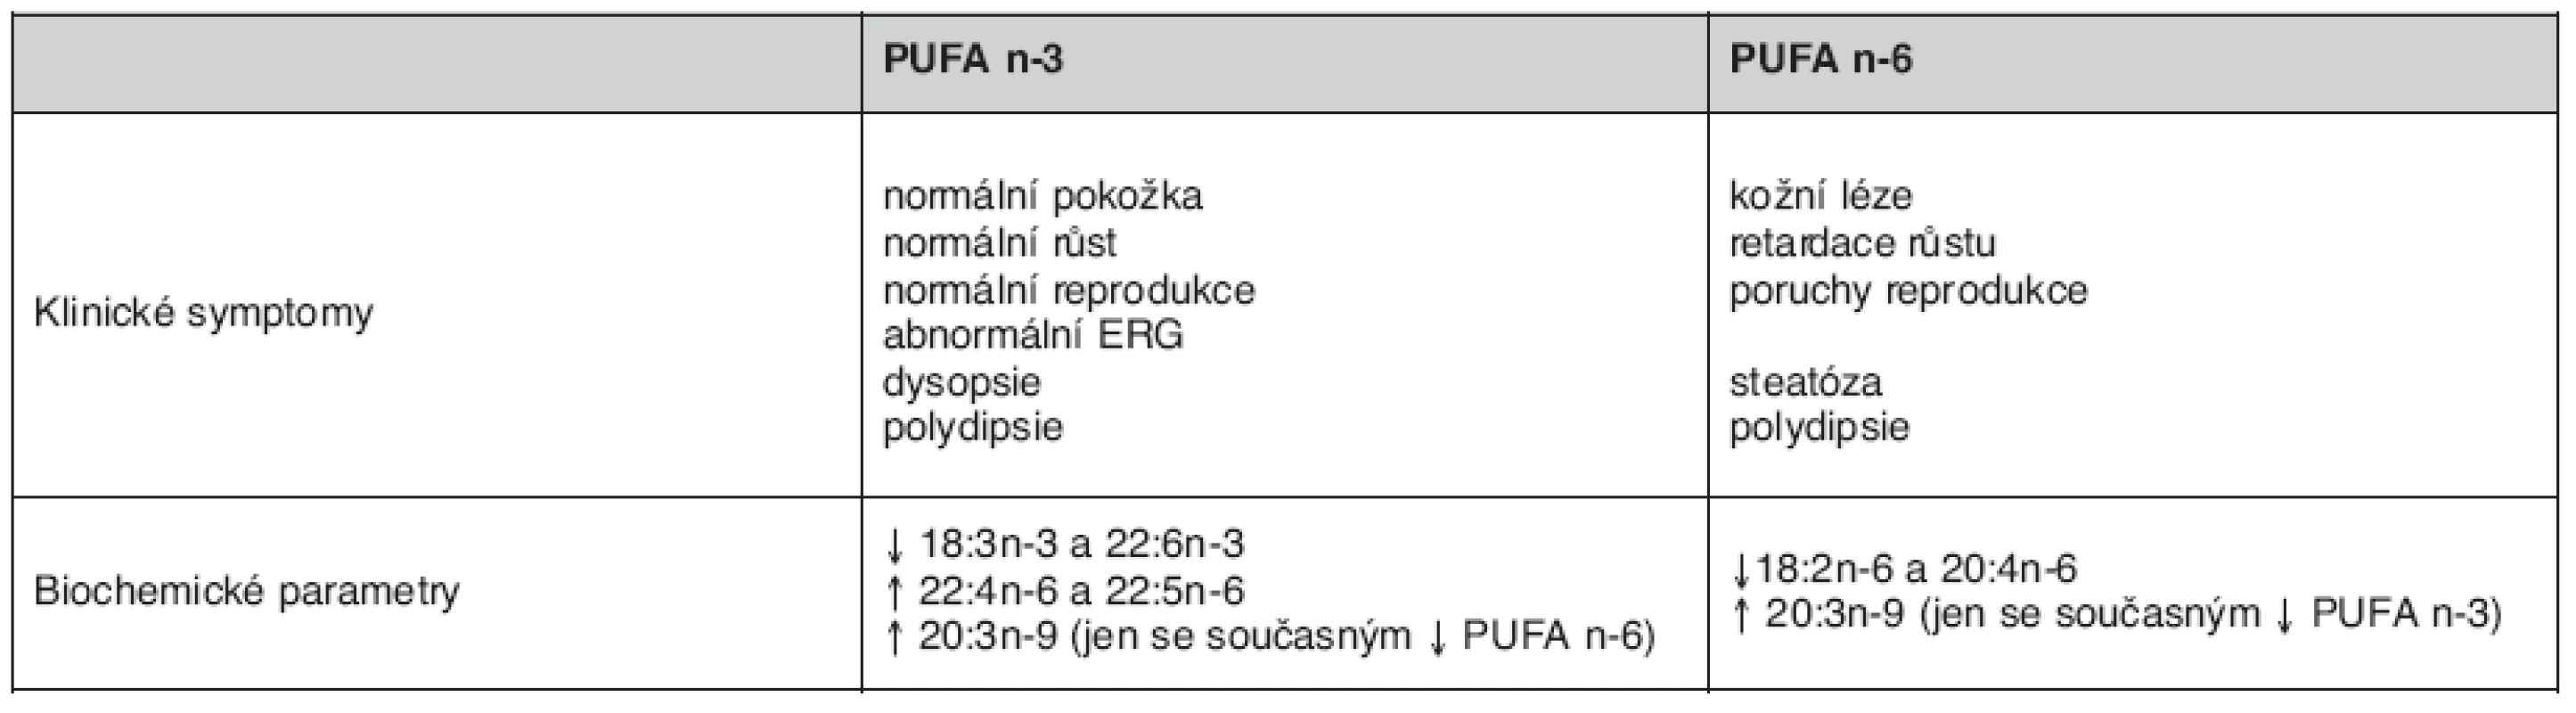 Srovnání deficience PUFA n-3 a n-6